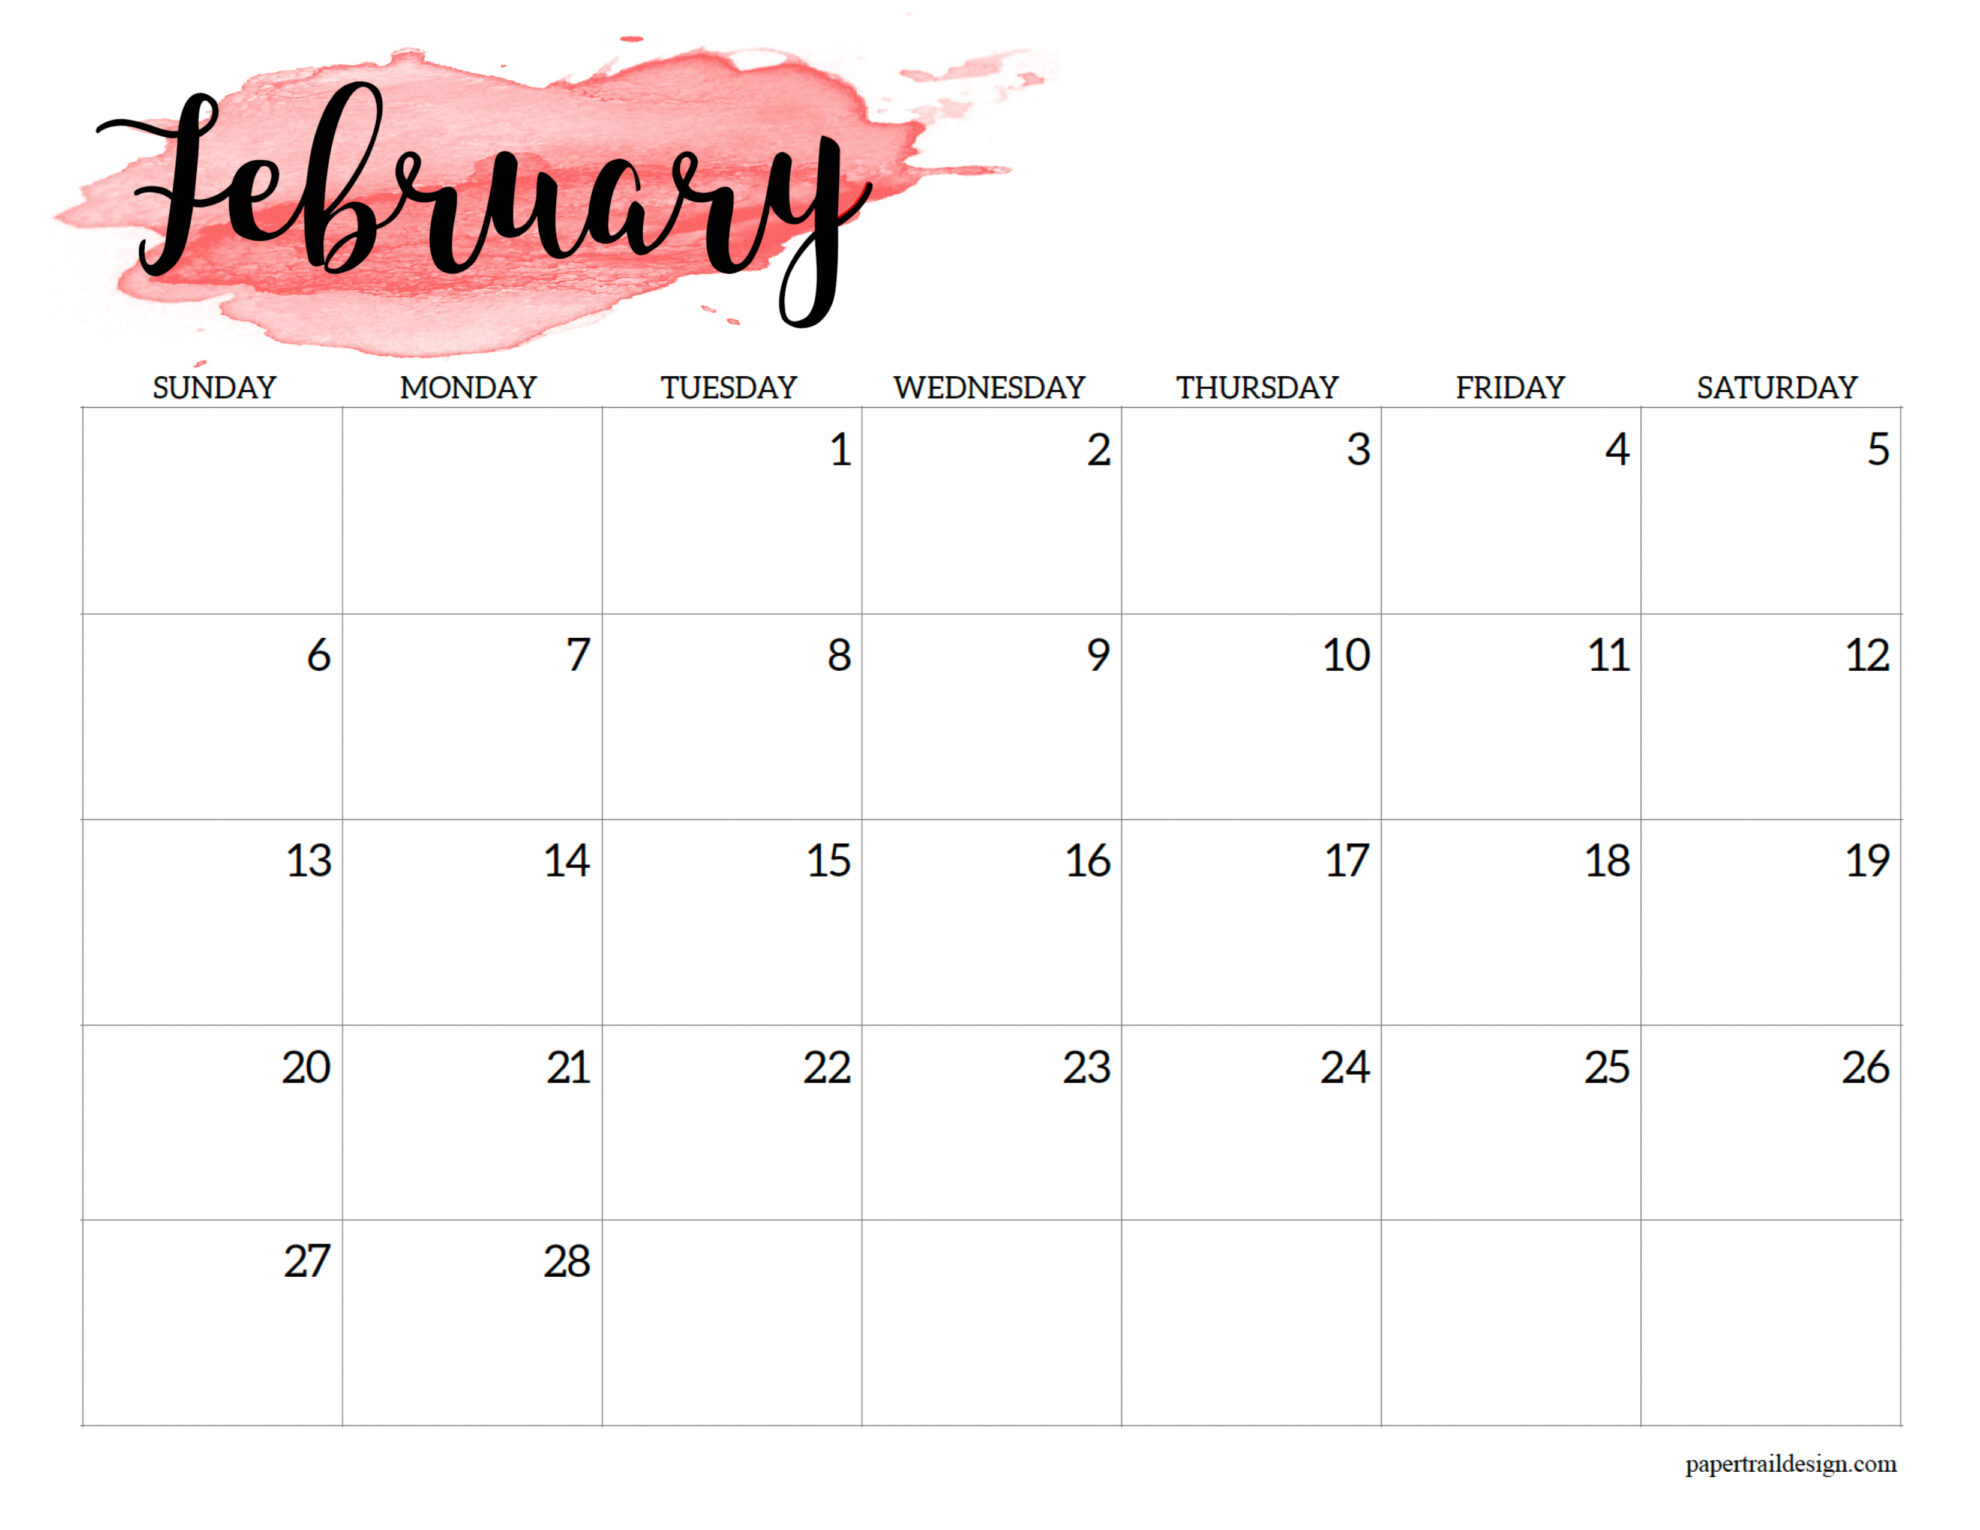 Feb 2022 Calendar Printable Free 2022 Calendar Printable - Watercolor - Paper Trail Design